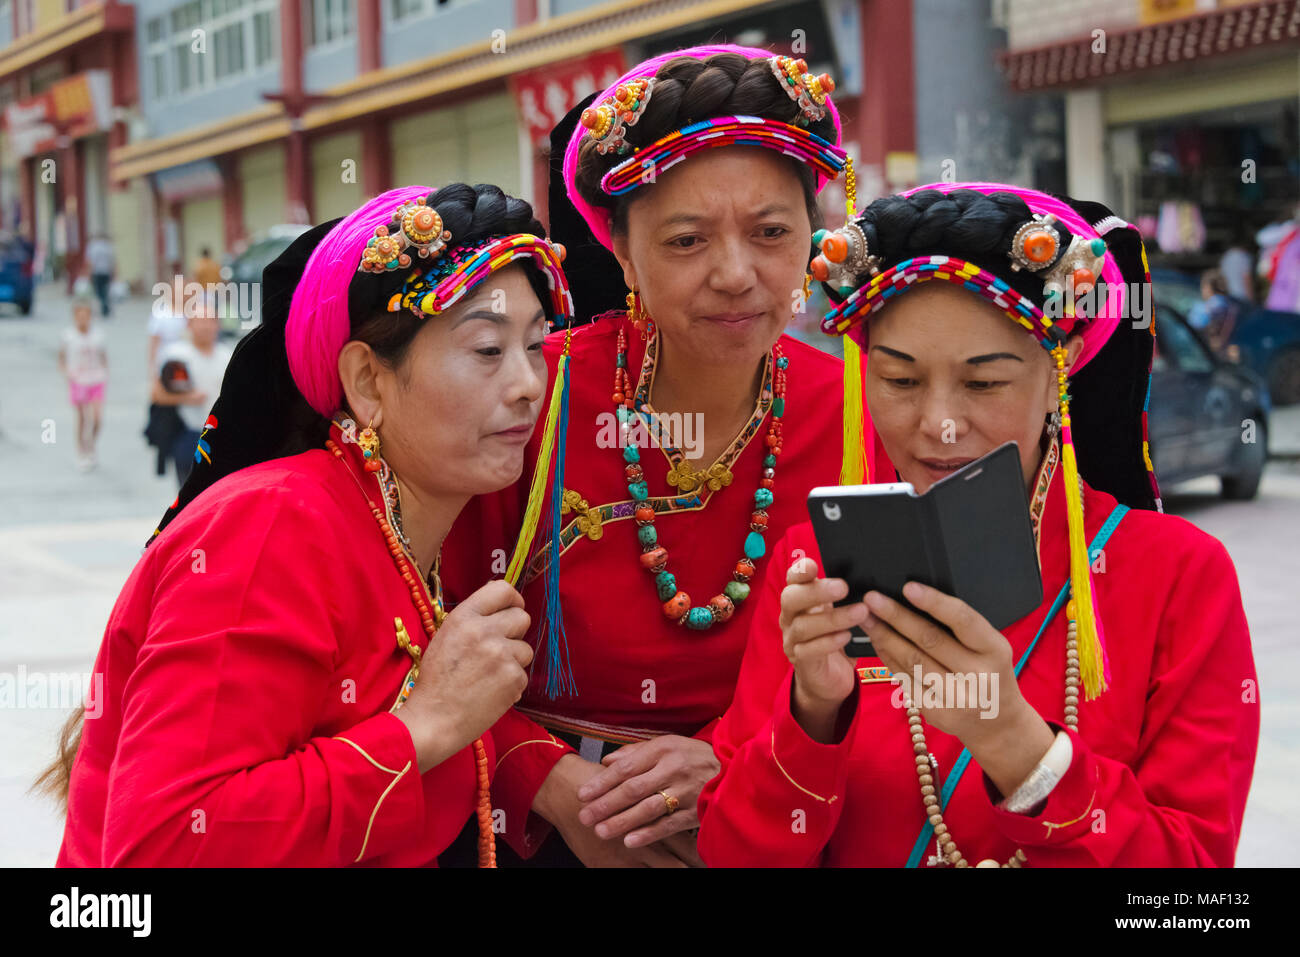 Il Tibetano donna in abiti tradizionali a guardare il telefono cellulare Danba, Danba County, Garze tibetano prefettura autonoma, western Sichuan, Cina Foto Stock